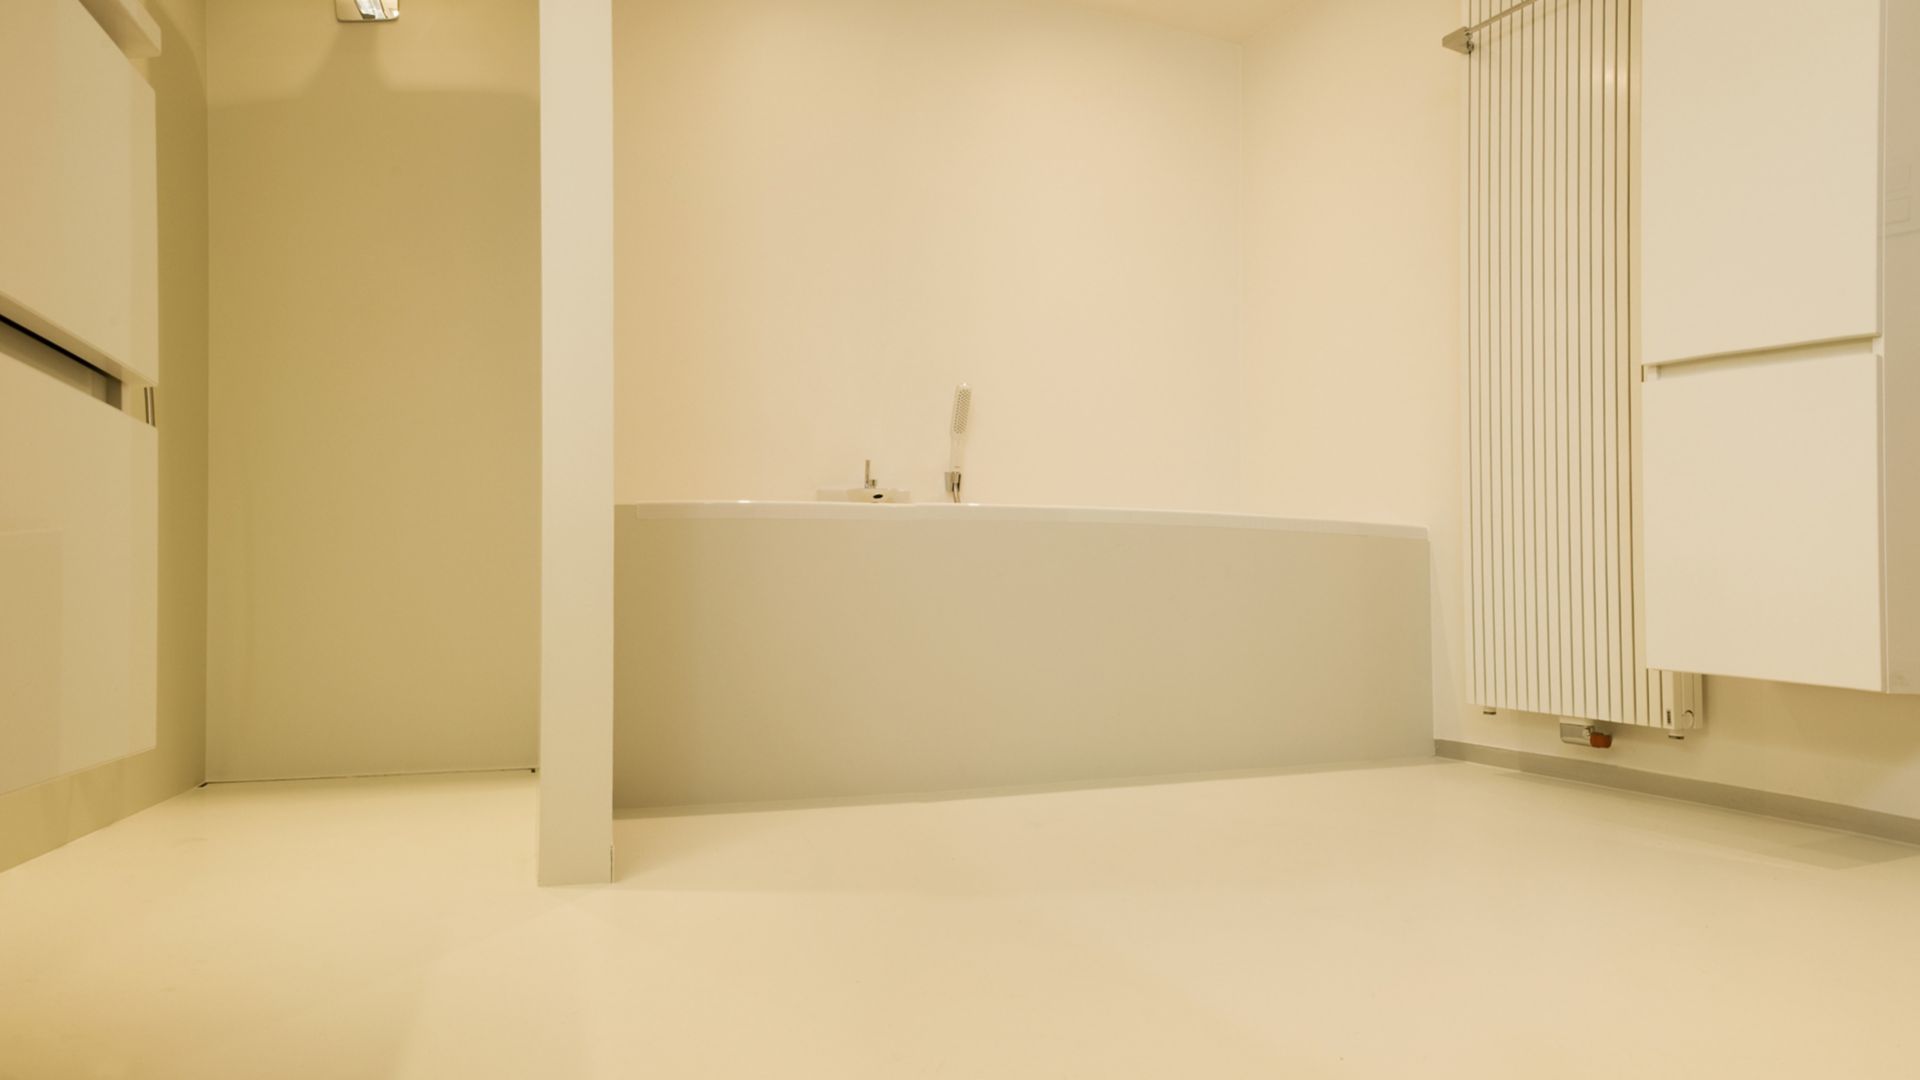 Sika ComfortFloor® beige floor in modern bathroom shower bathtub